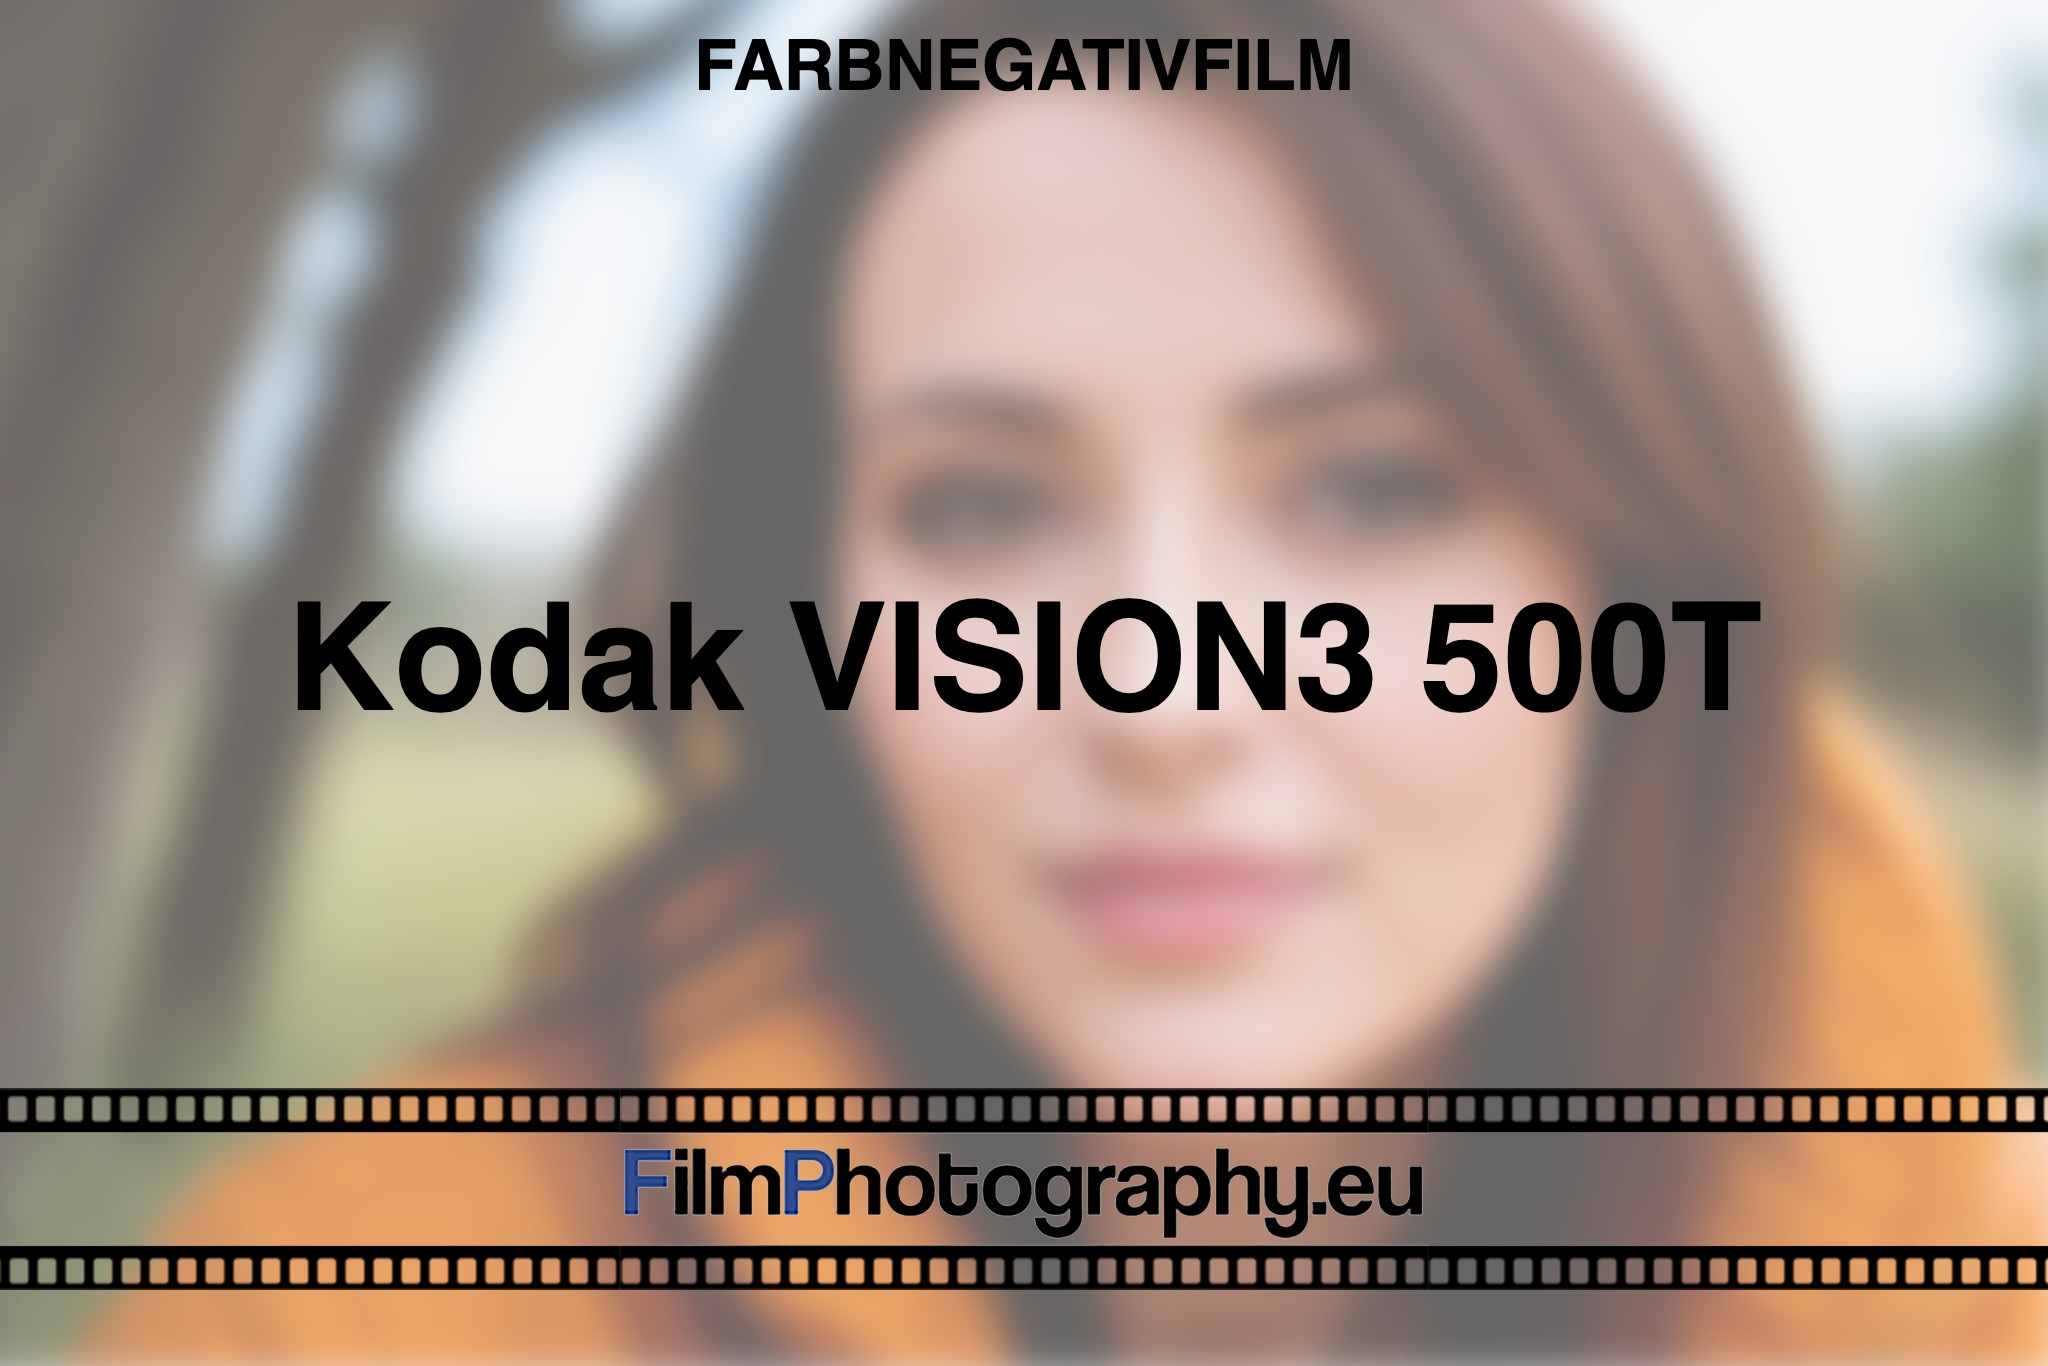 Kodak-Vision3-500T-Farbnegativfilm-bnv